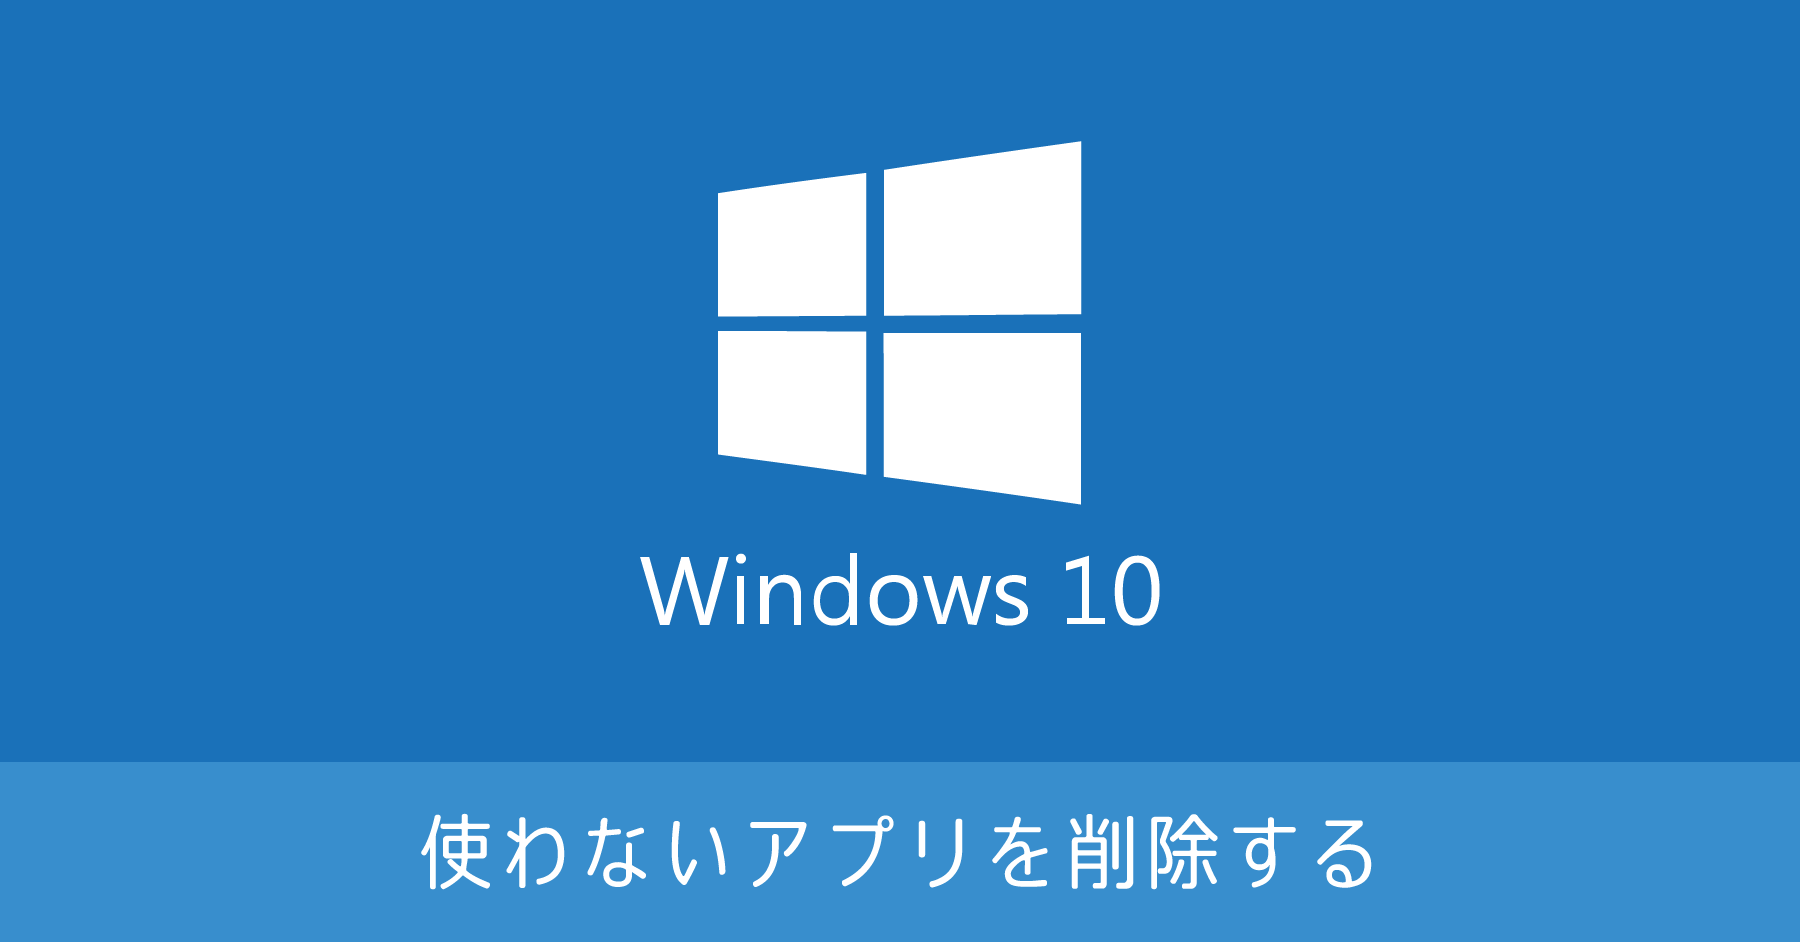 Windows 10 で不要なアプリを削除する方法【アンインストール】